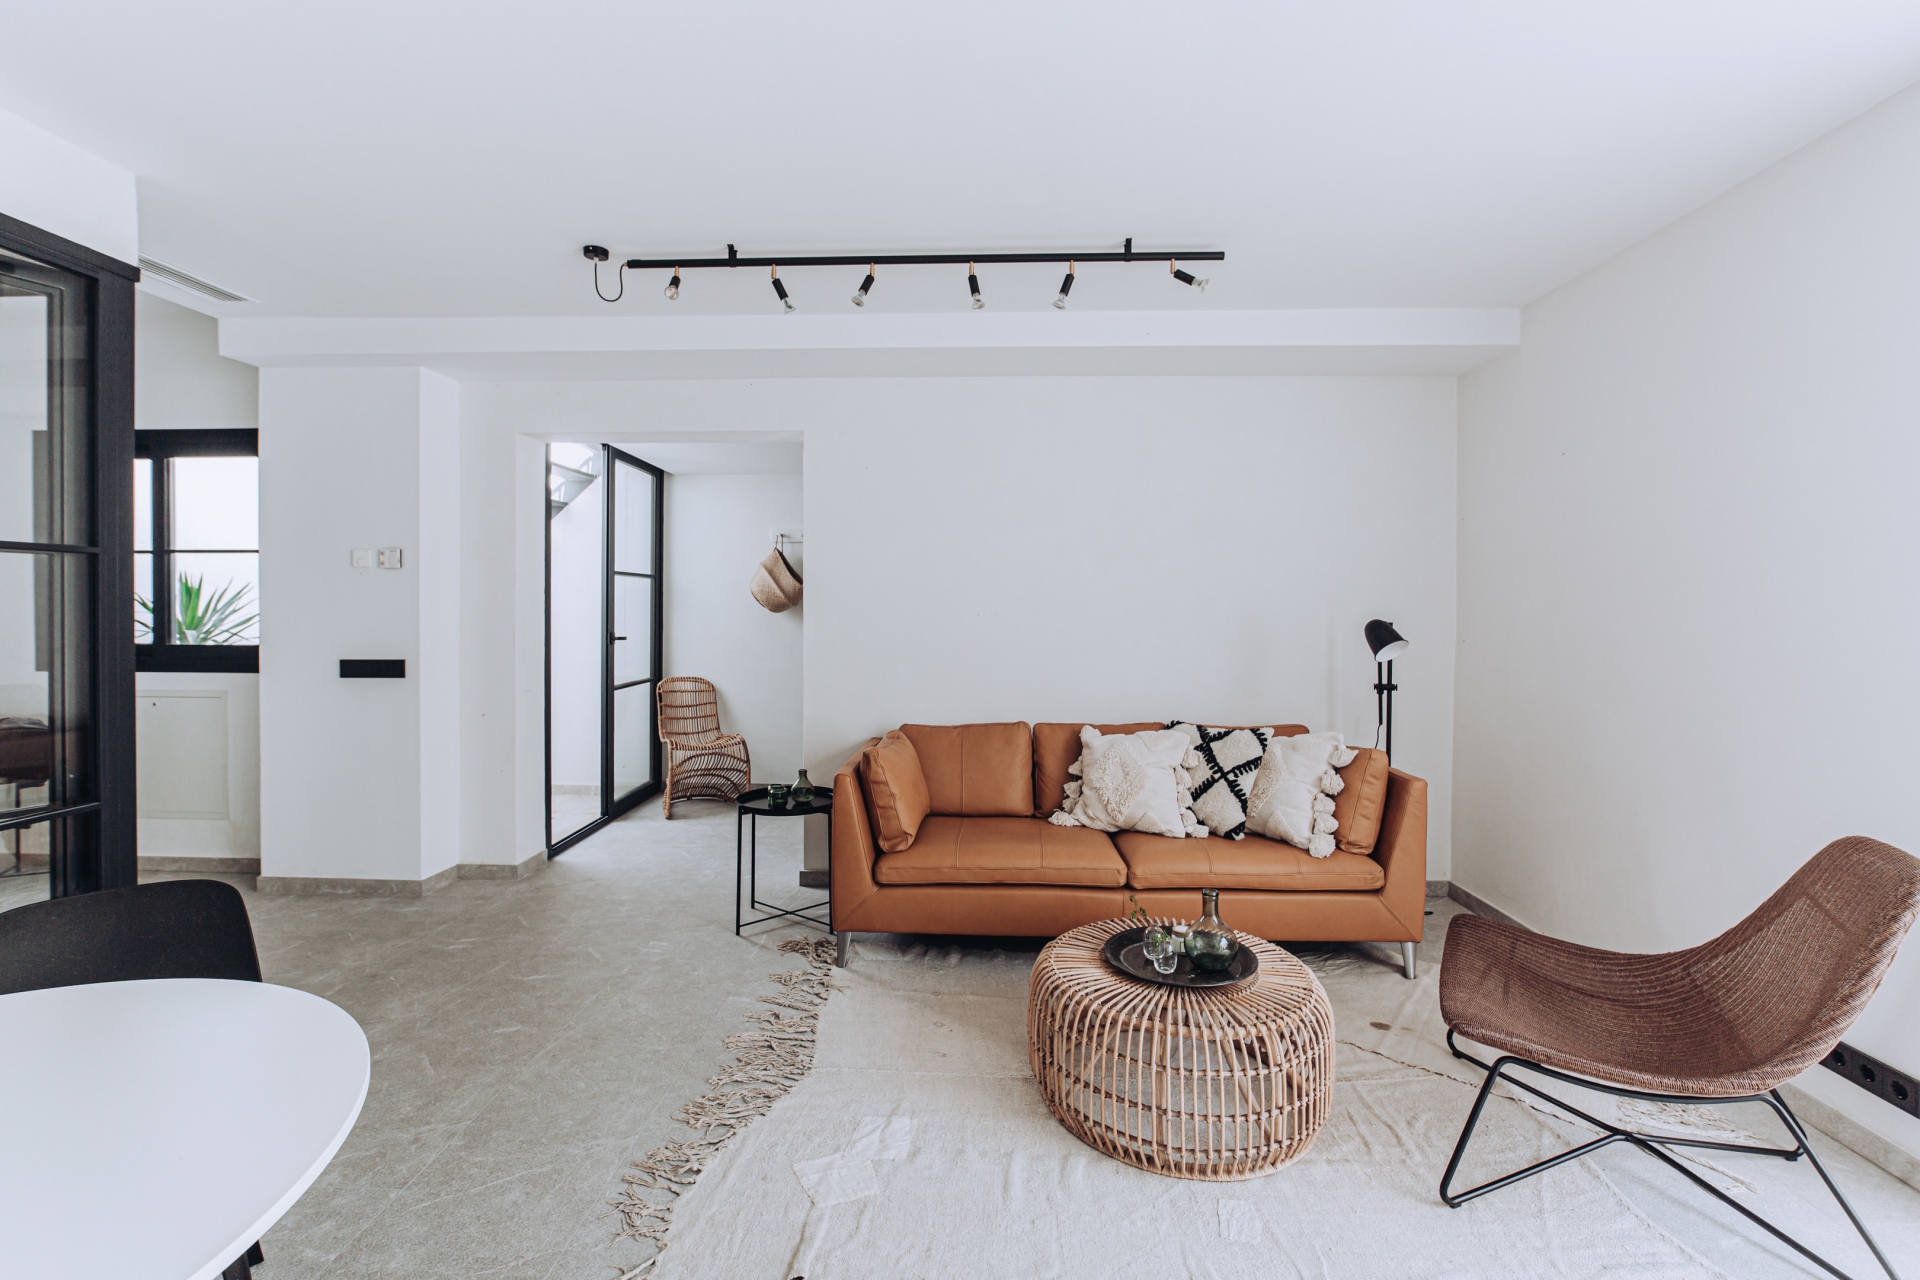 PMA Studio thiết kế ngôi nhà ở Tây Ban Nha với tone màu trắng tươi sáng, nội thất mây tre đan và đặc biệt là chiếc ghế sofa nổi bật ngay tại vị trí trung tâm. Phong cách tối giản cùng nội thất vượt thời gian như thế này sẽ đẹp và bền mãi với thời gian.